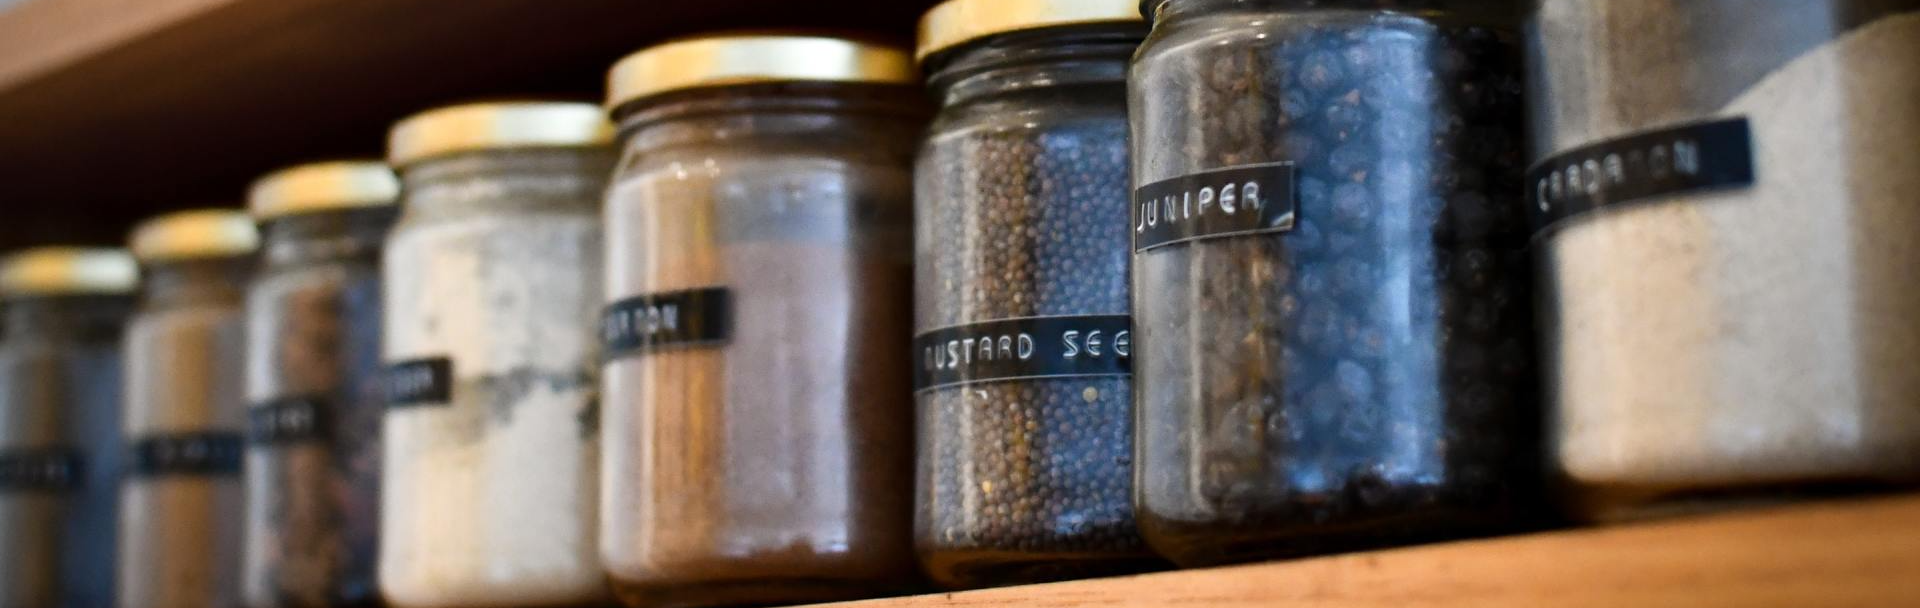 Labeled Jars on a Shelf